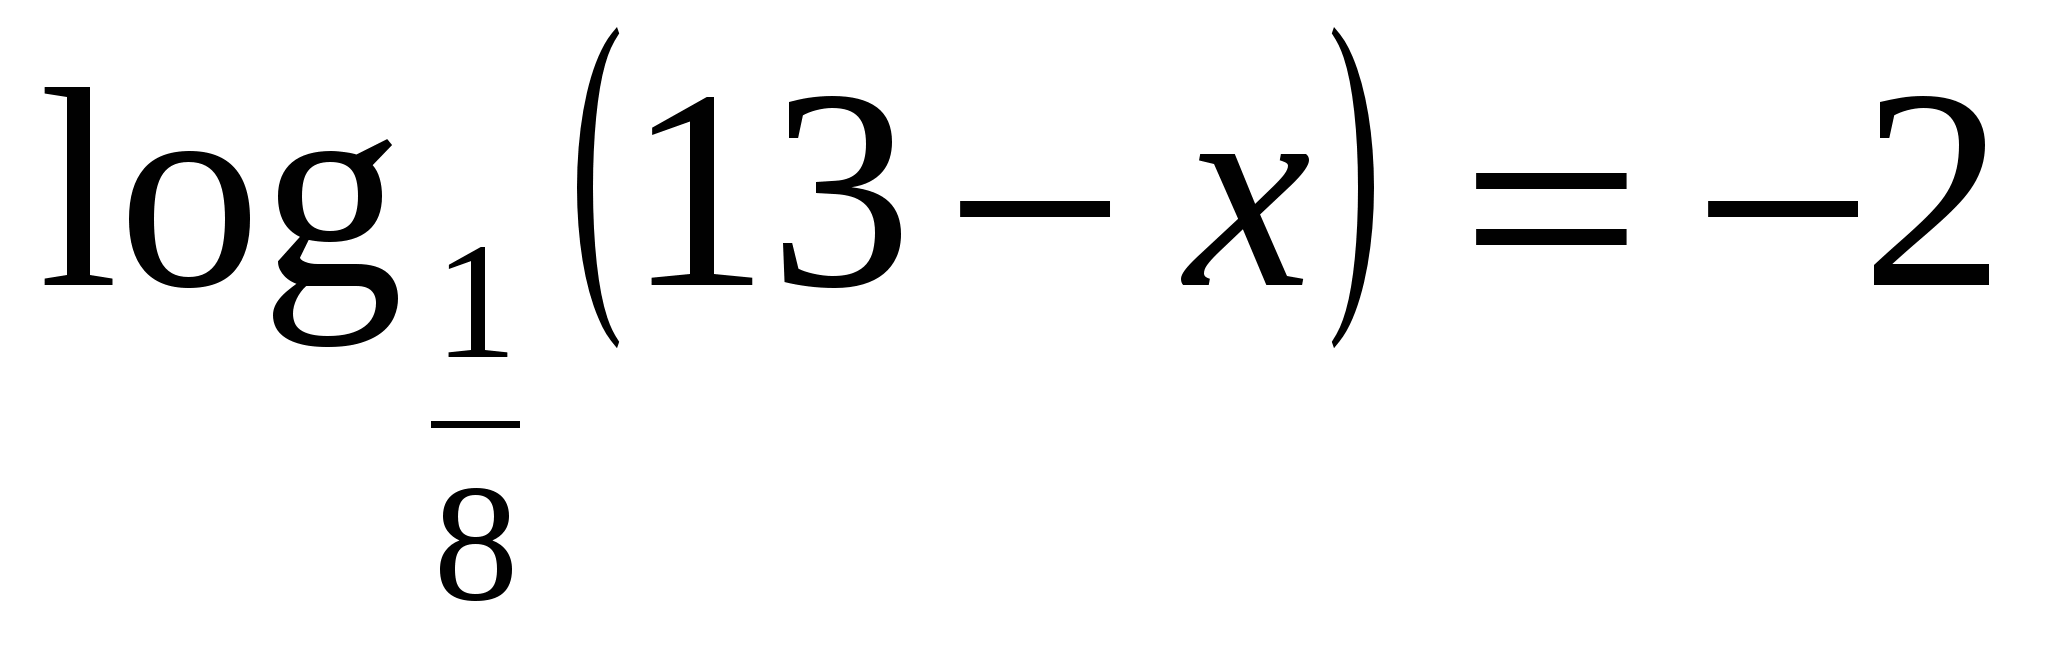 Урок по алгебре по темеЛогарифмические уравнения.